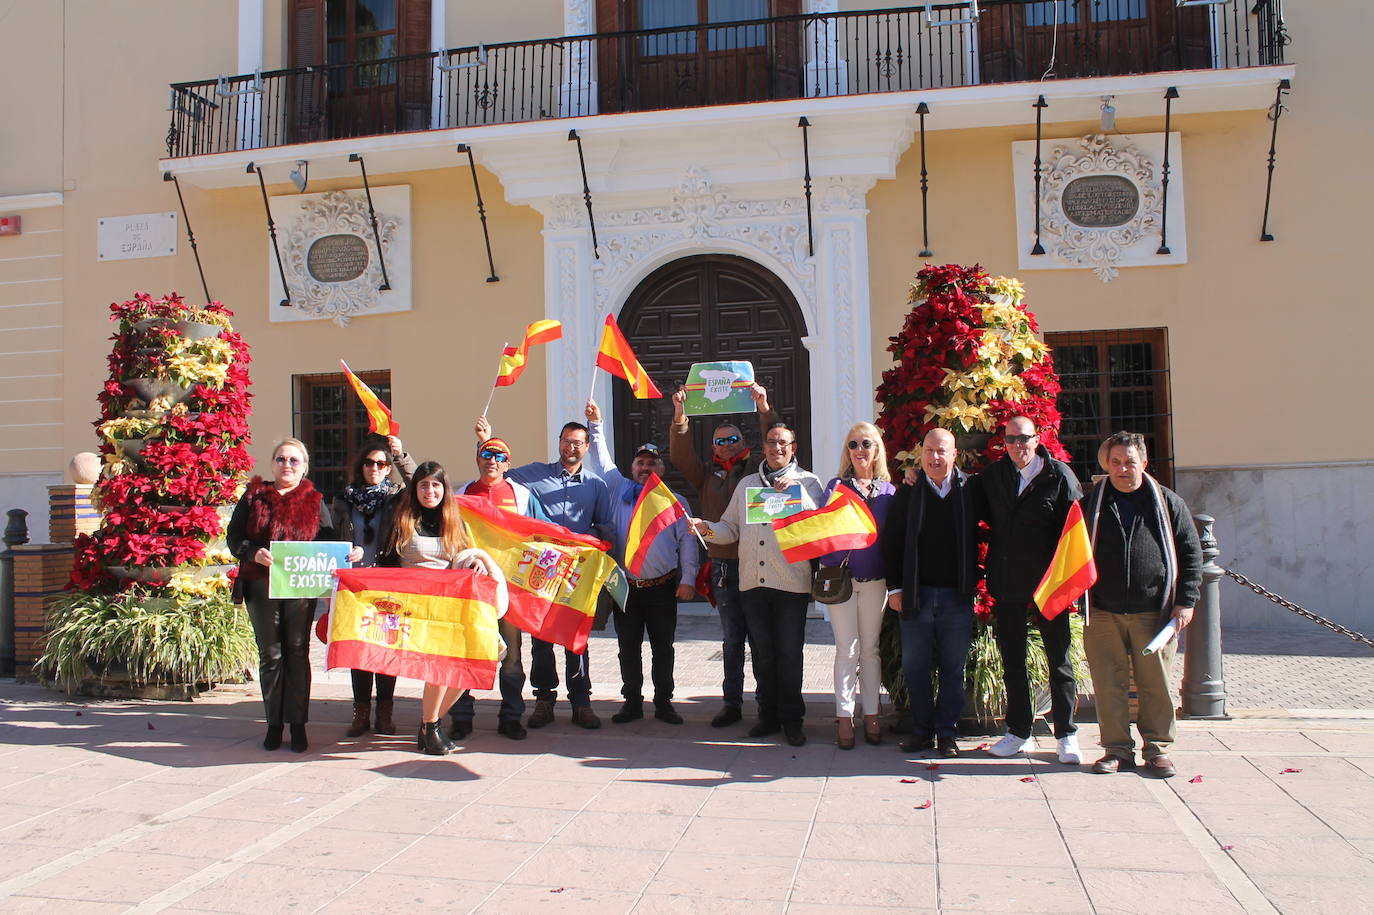 Fotos: 200 vecinos de Motril se concentran bajo el auspicio de Vox para «unir España»